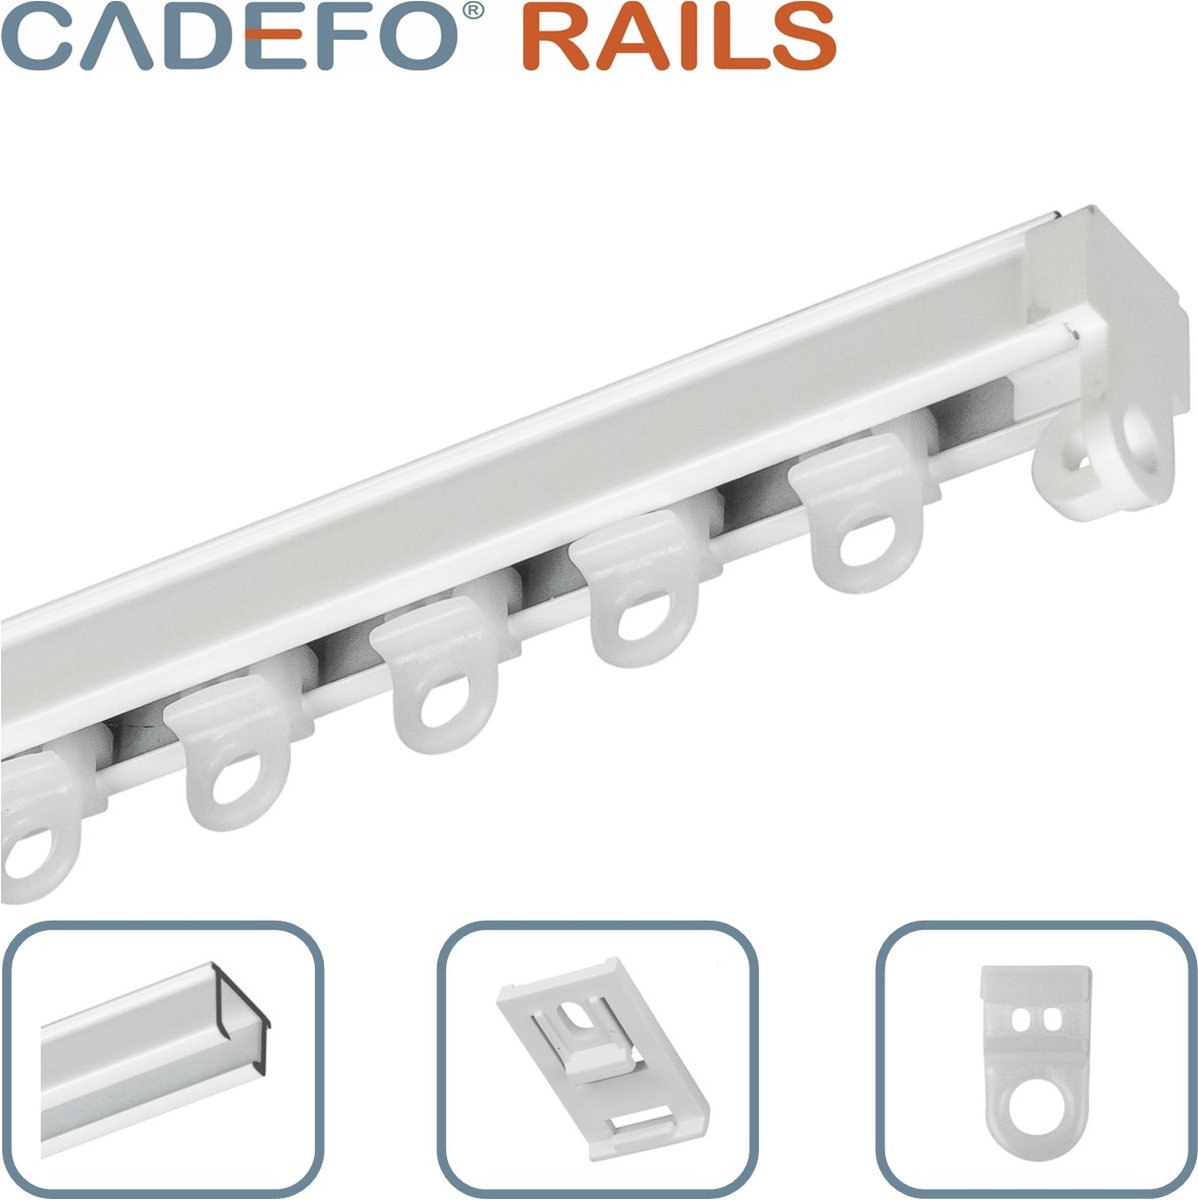 CADEFO RAILS (551 - 600 cm) Gordijnrails - Compleet op maat! - UIT 1 STUK - Leverbaar tot 6 meter - Plafondbevestiging - Lengte 599 cm